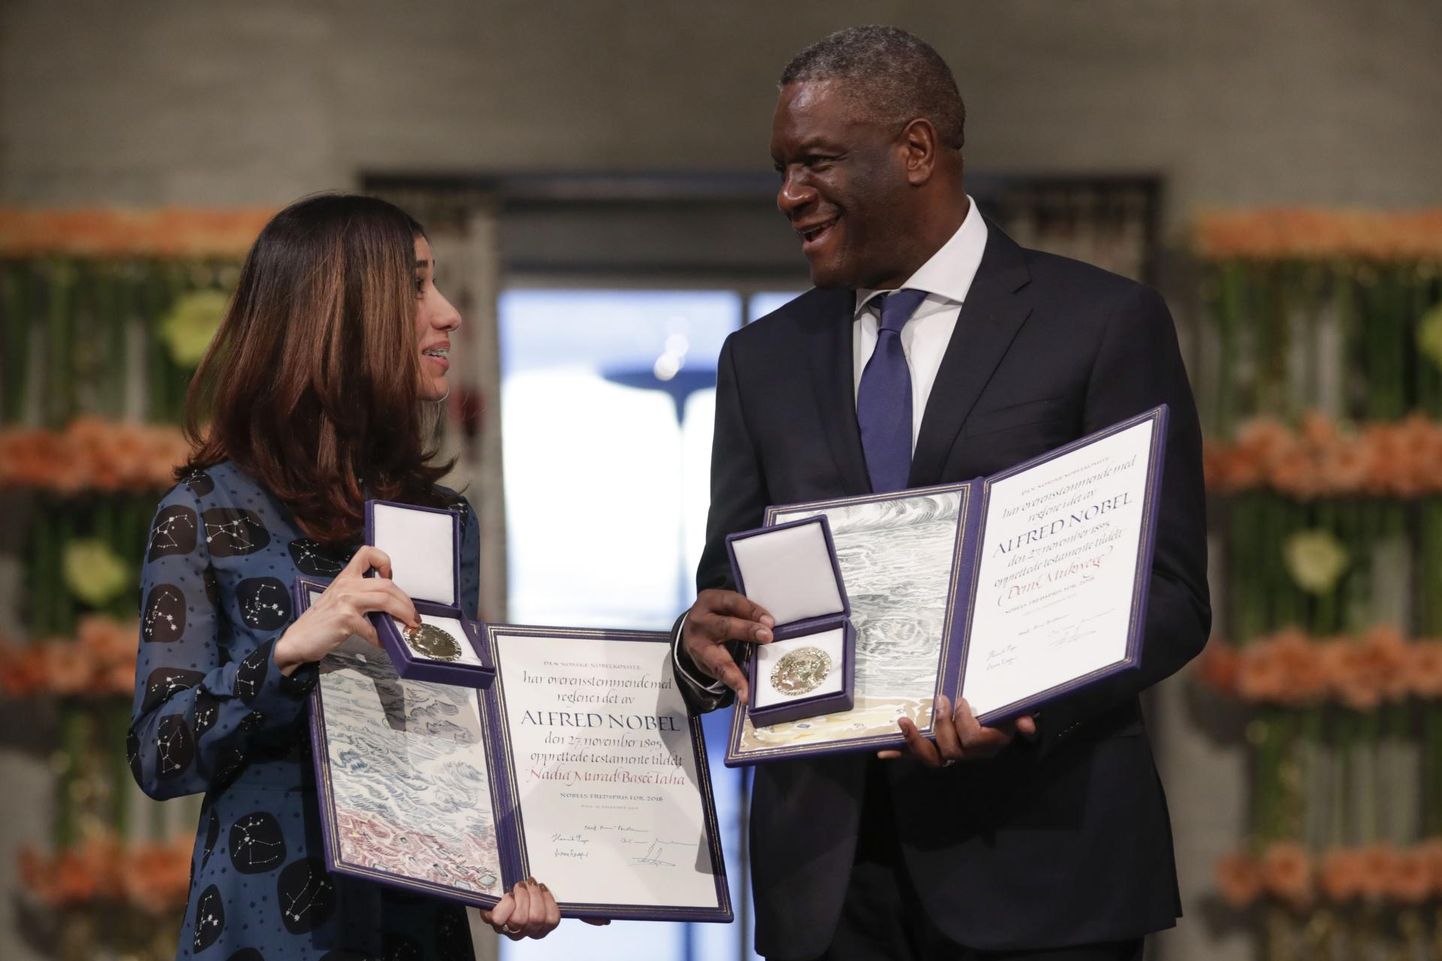 Sõjavägistamisohvrite eestkõnelejad, doktor Denis Mukwege ja Nadia Murad, võtsid eile Oslos vastu tänavuse Nobeli rahu-preemia.